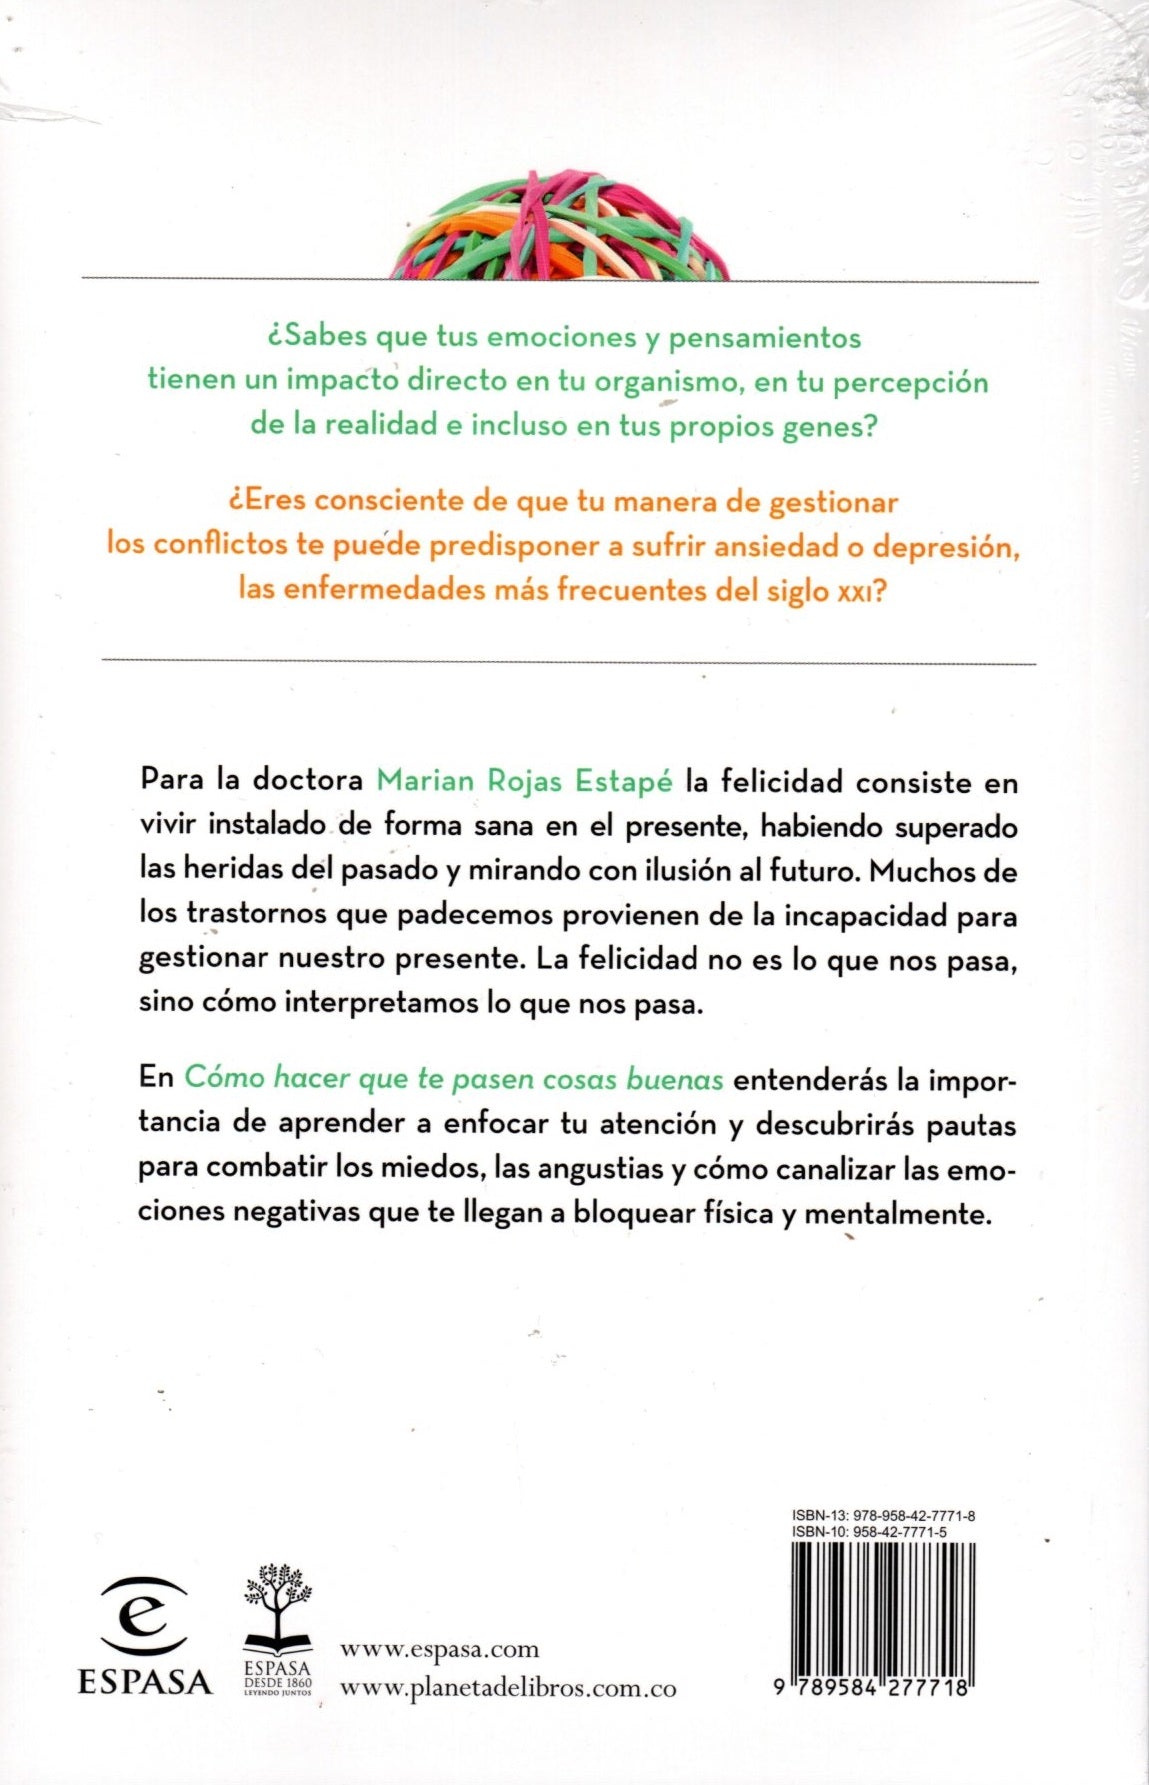 Cómo hacer que te pasen cosas buenas - Marian Rojas Estapé.pdf